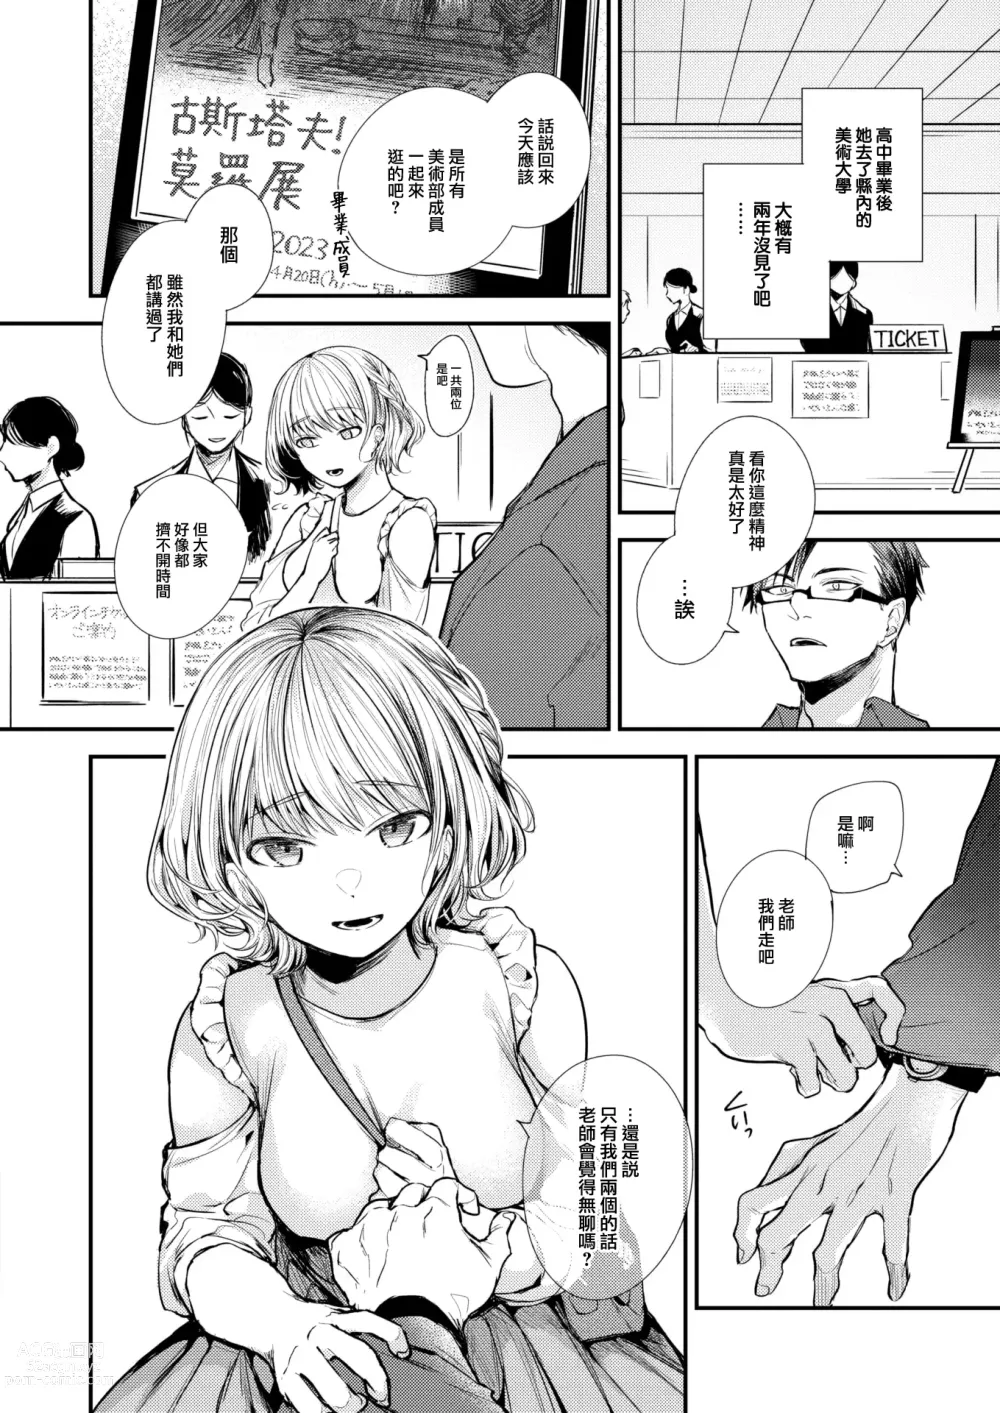 Page 5 of manga Sekishun no Jou